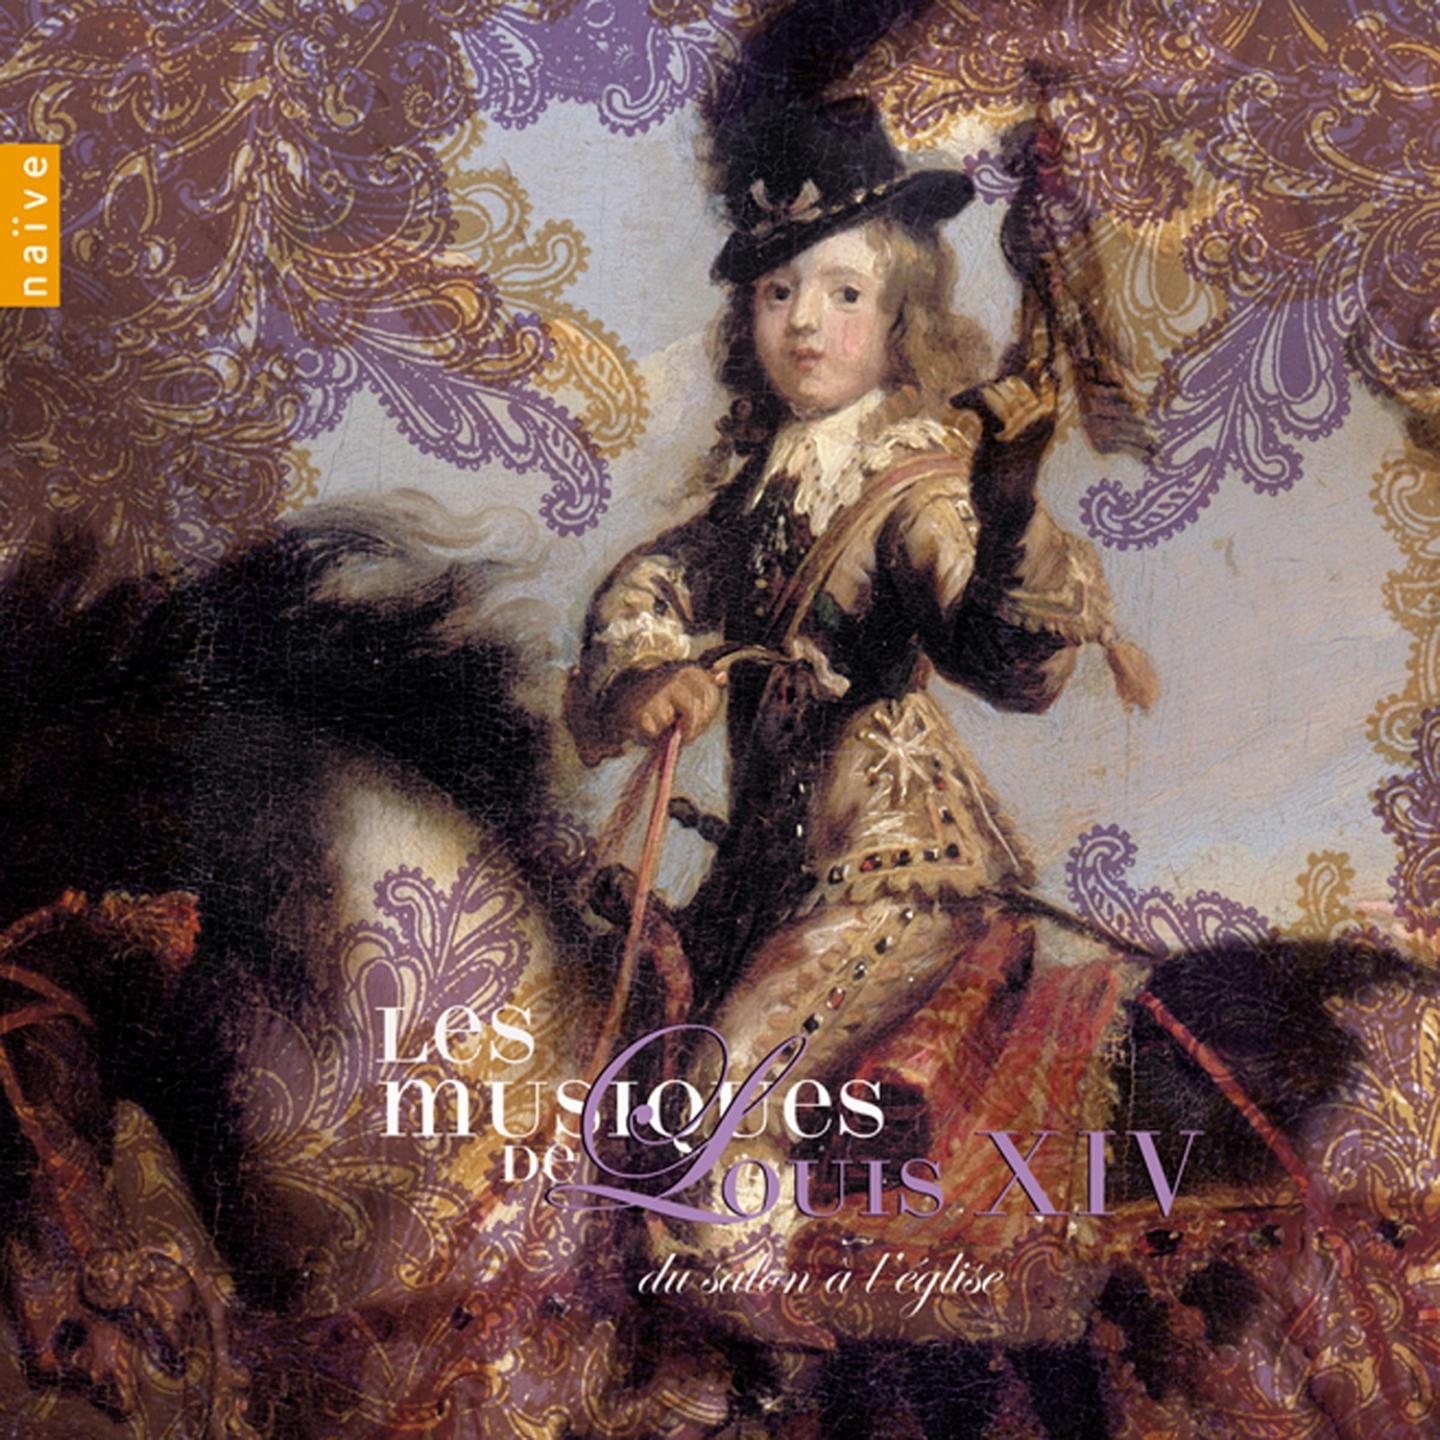 Les Musiques de Louis XIV Vol. 1: Du salon a l'e glise